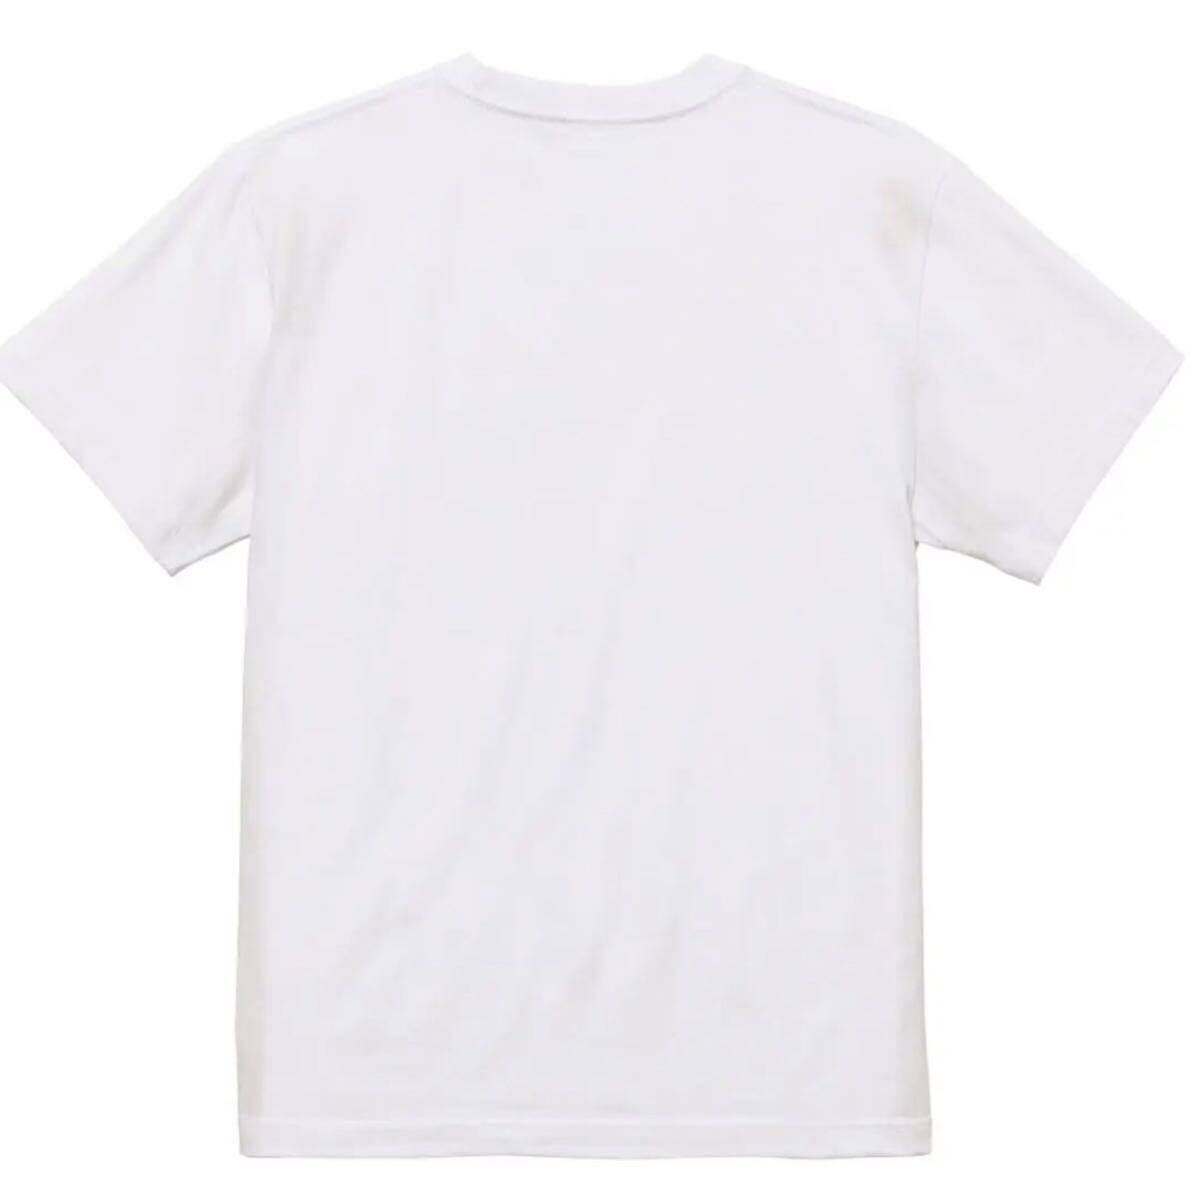 【送料込み】BALEHENGANAサイズ 白Lサイズ Tシャツ ネタT おもしろ 大阪名物 なんでやねん ギャグ ネタ ウケ狙い パロディ ブランド